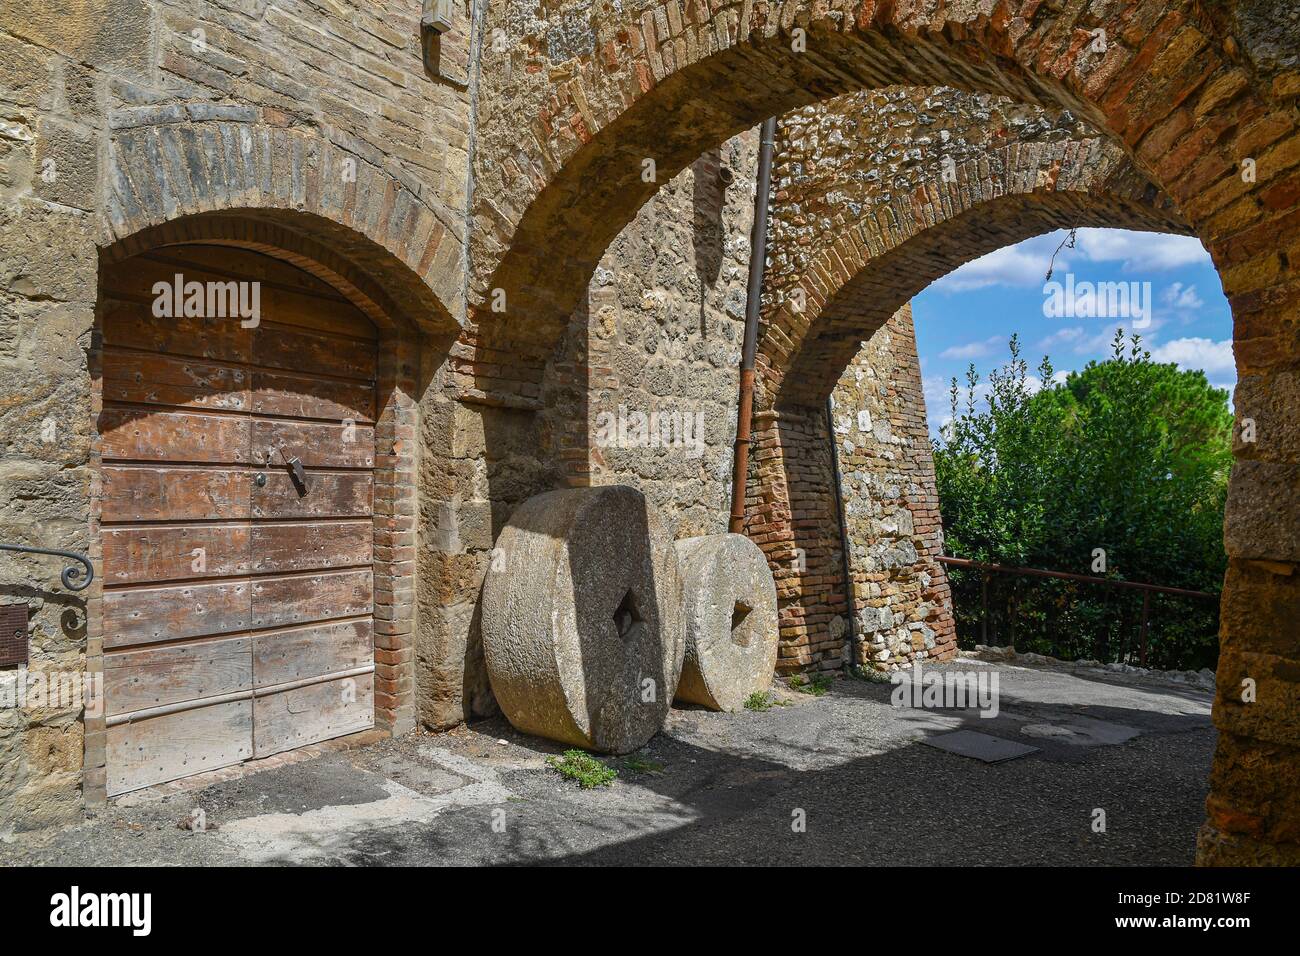 Aperçu d'une allée voûtée dans le village médiéval avec de vieilles pierres contre le mur d'une ancienne maison, San Gimignano, Sienne, Toscane, Italie Banque D'Images